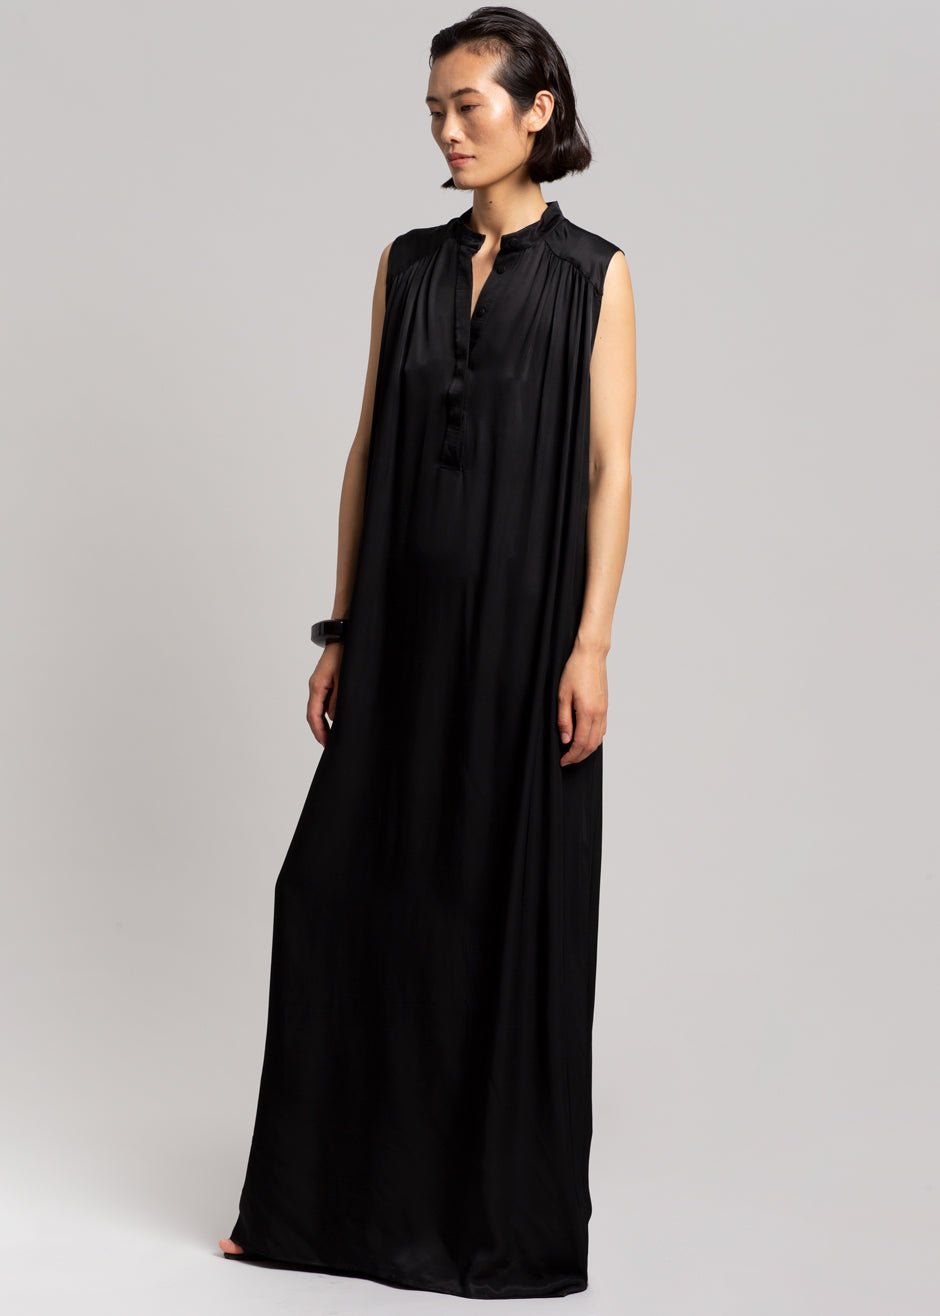 MATIN Sleeveless Button-up Dress - Black - 3